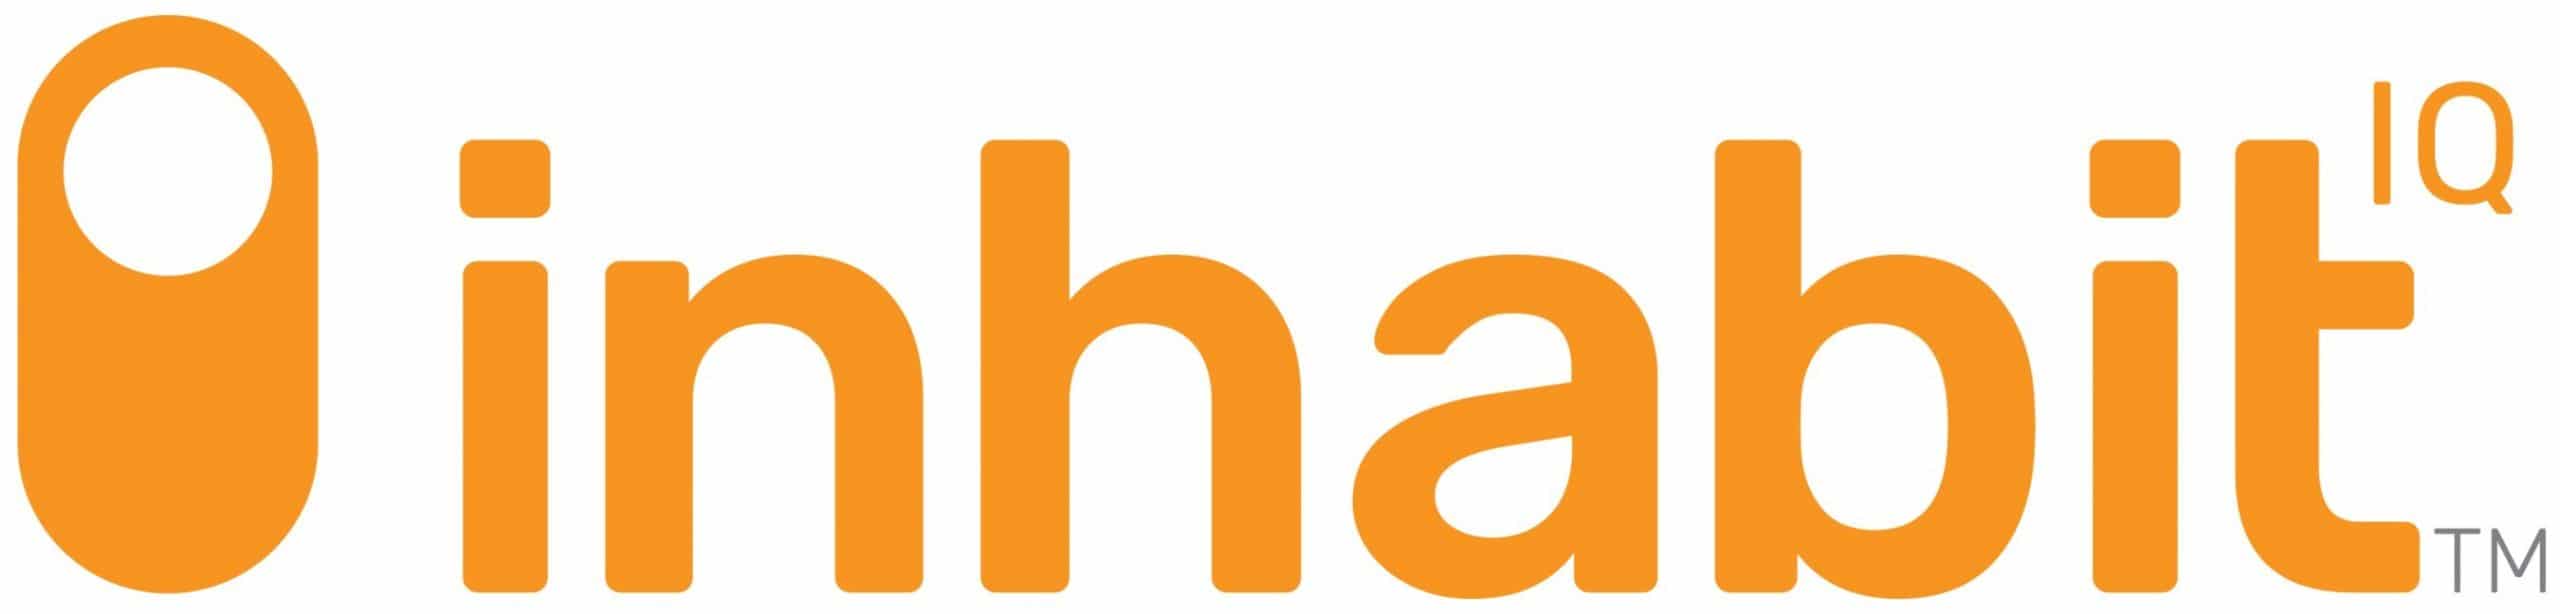 Inhabit_IQ_Orange_Logo-scaled